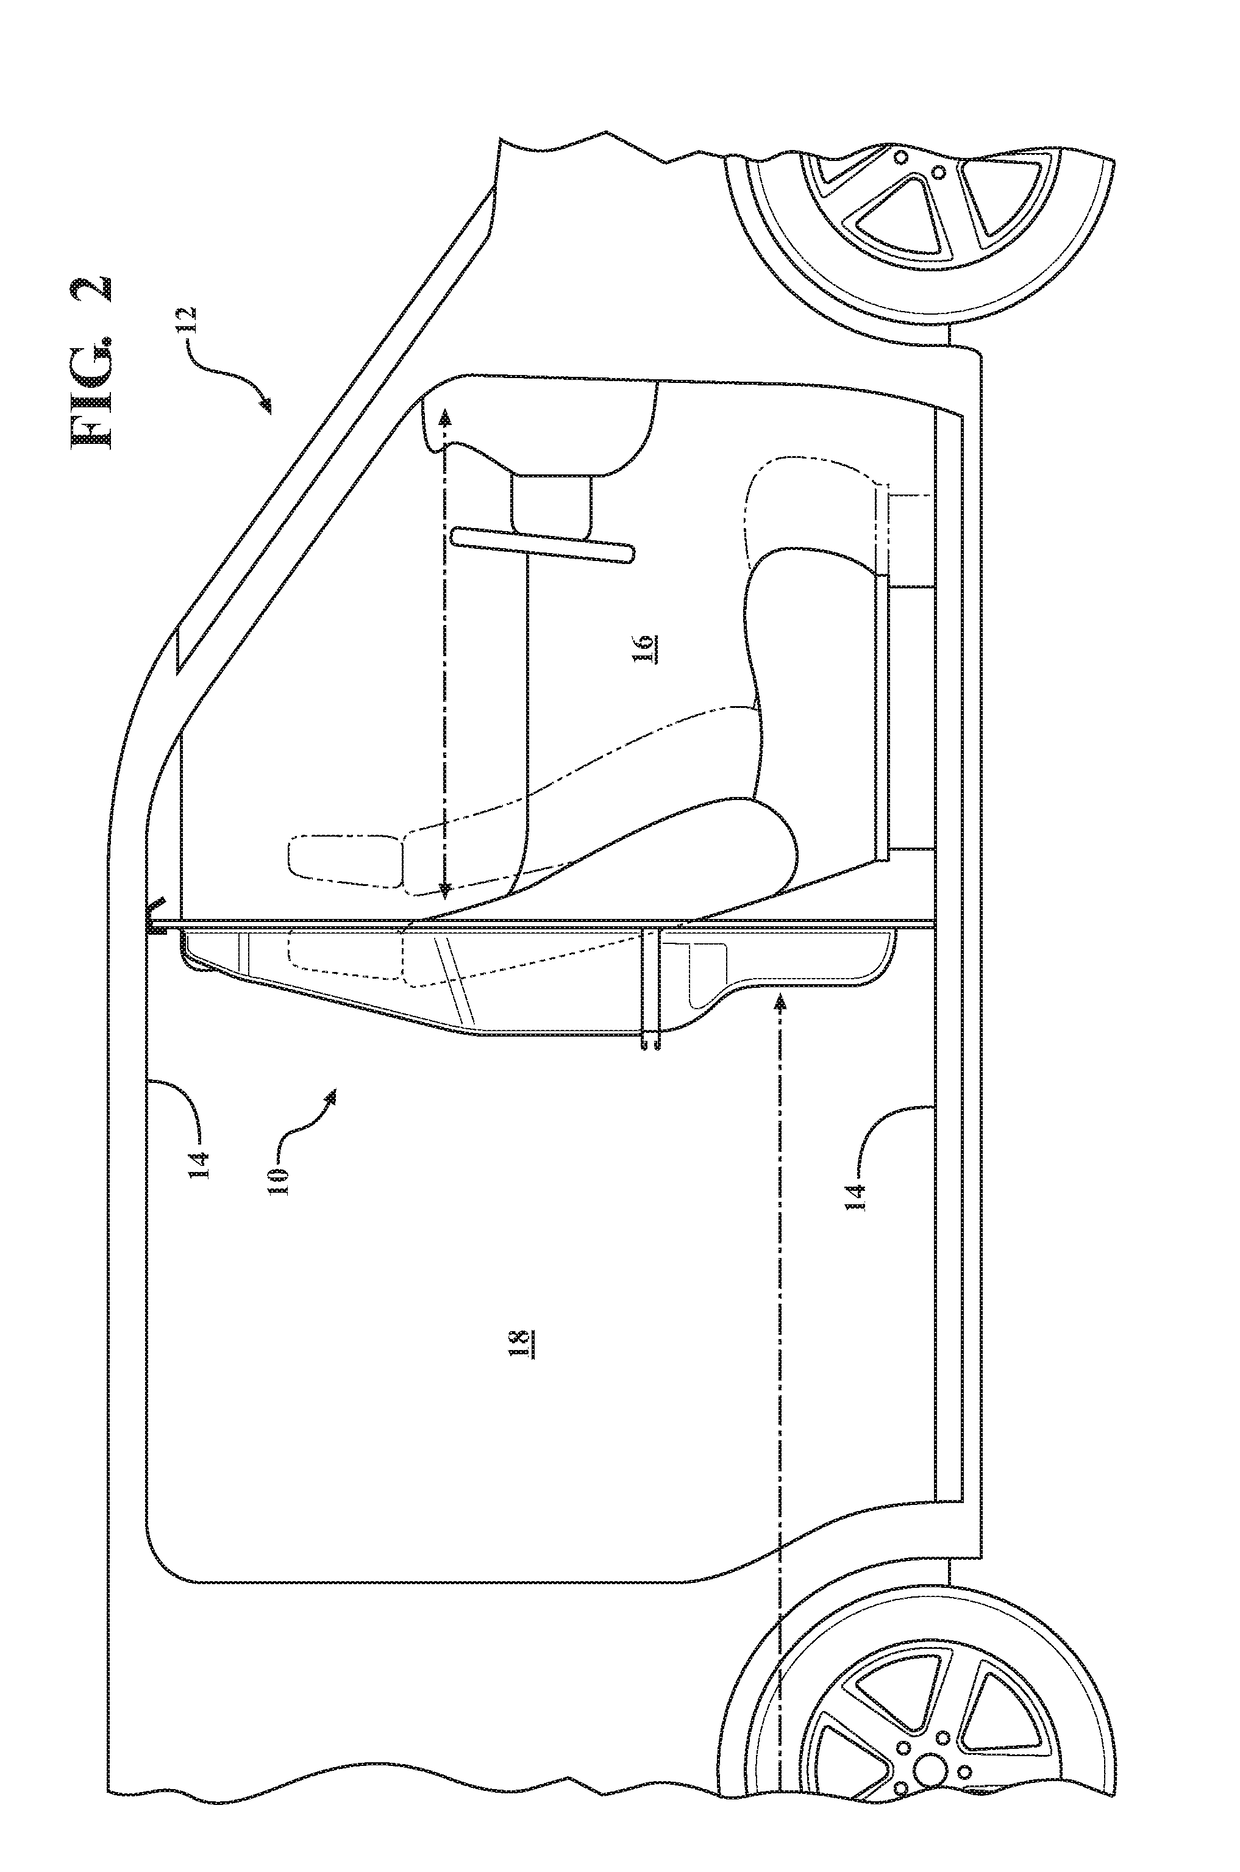 Transparent vehicle partition